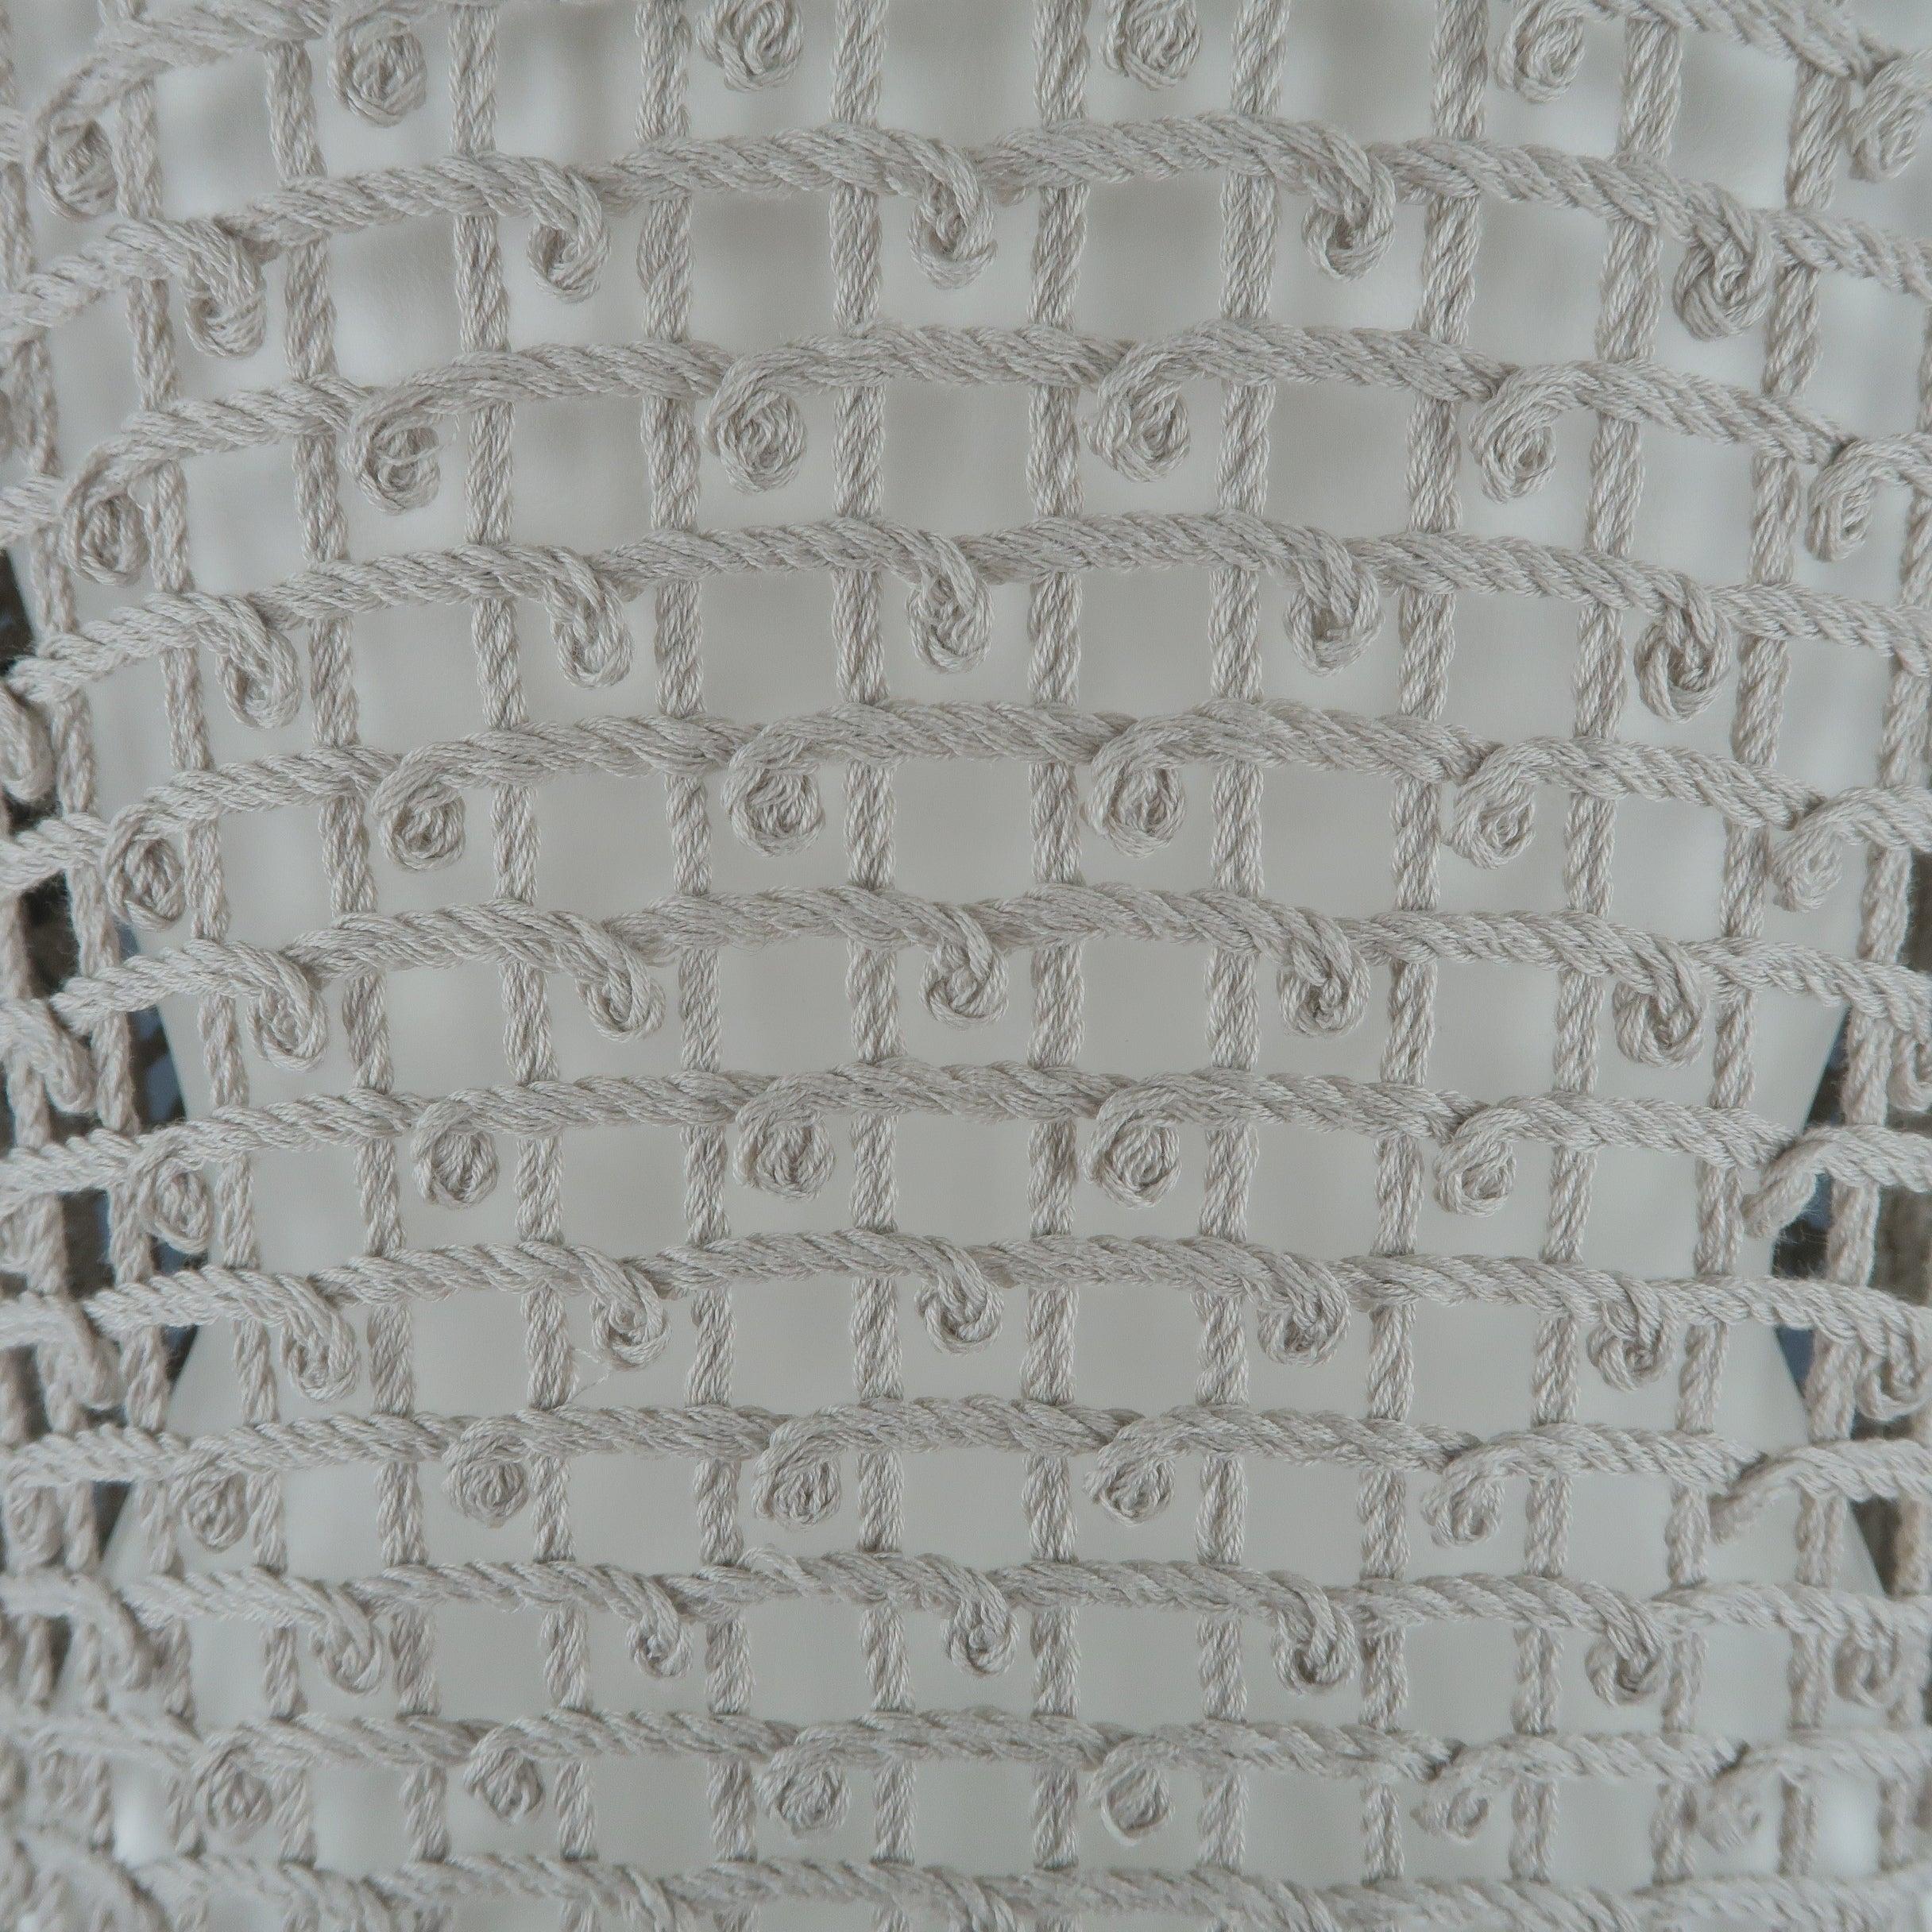 OSCAR DE LA RENTA Size S Taupe & Cream Cotton Crochet Knit Tunic Pullover 6